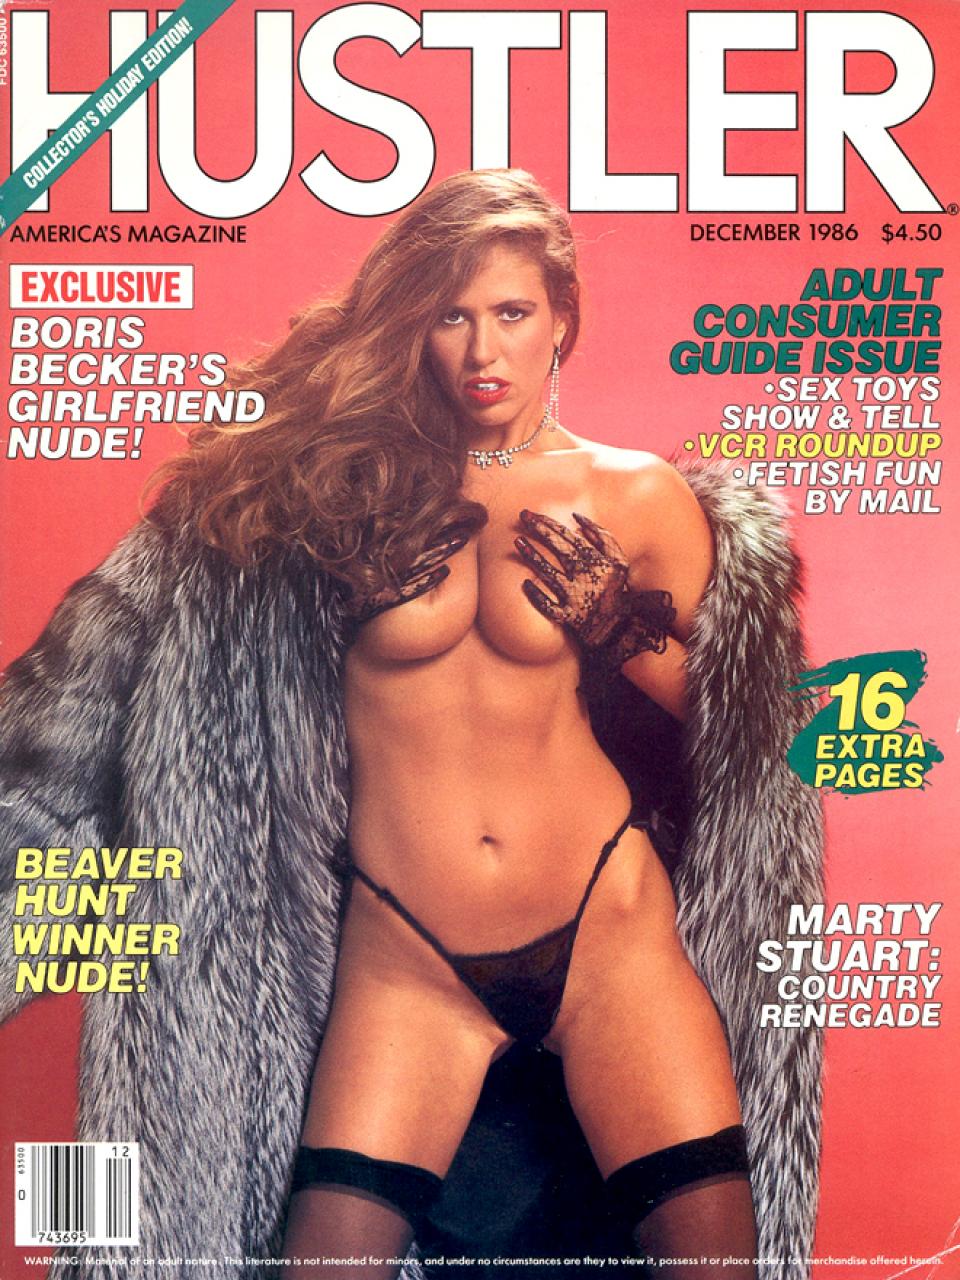 December 1986 - HUSTLER Magazine.